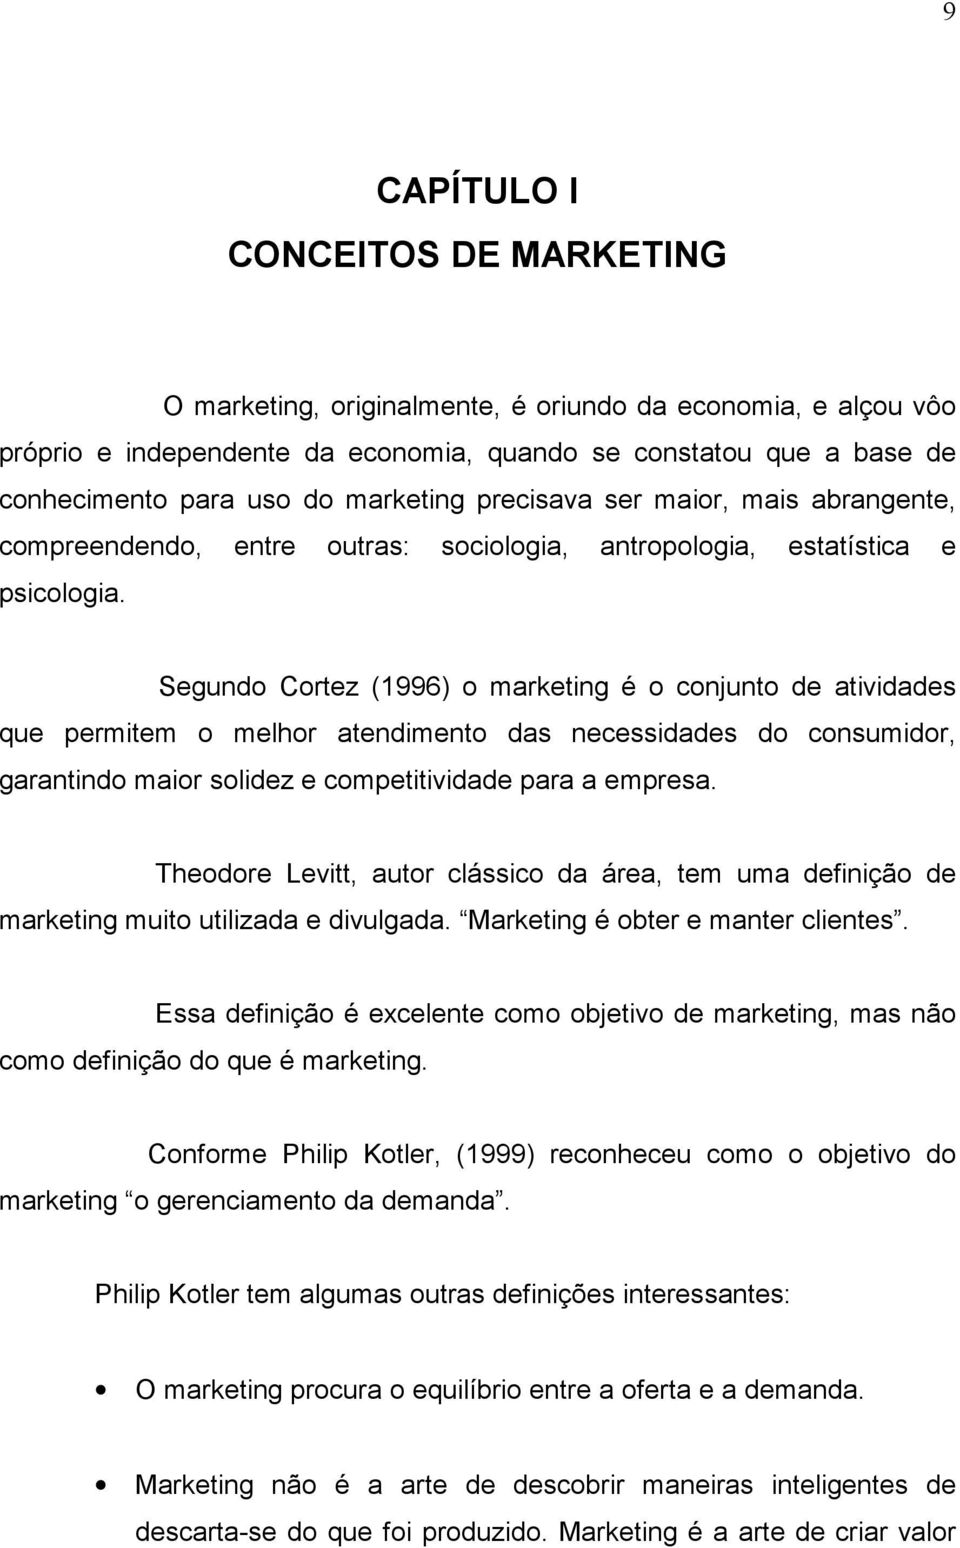 Segundo Cortez (1996) o marketing é o conjunto de atividades que permitem o melhor atendimento das necessidades do consumidor, garantindo maior solidez e competitividade para a empresa.